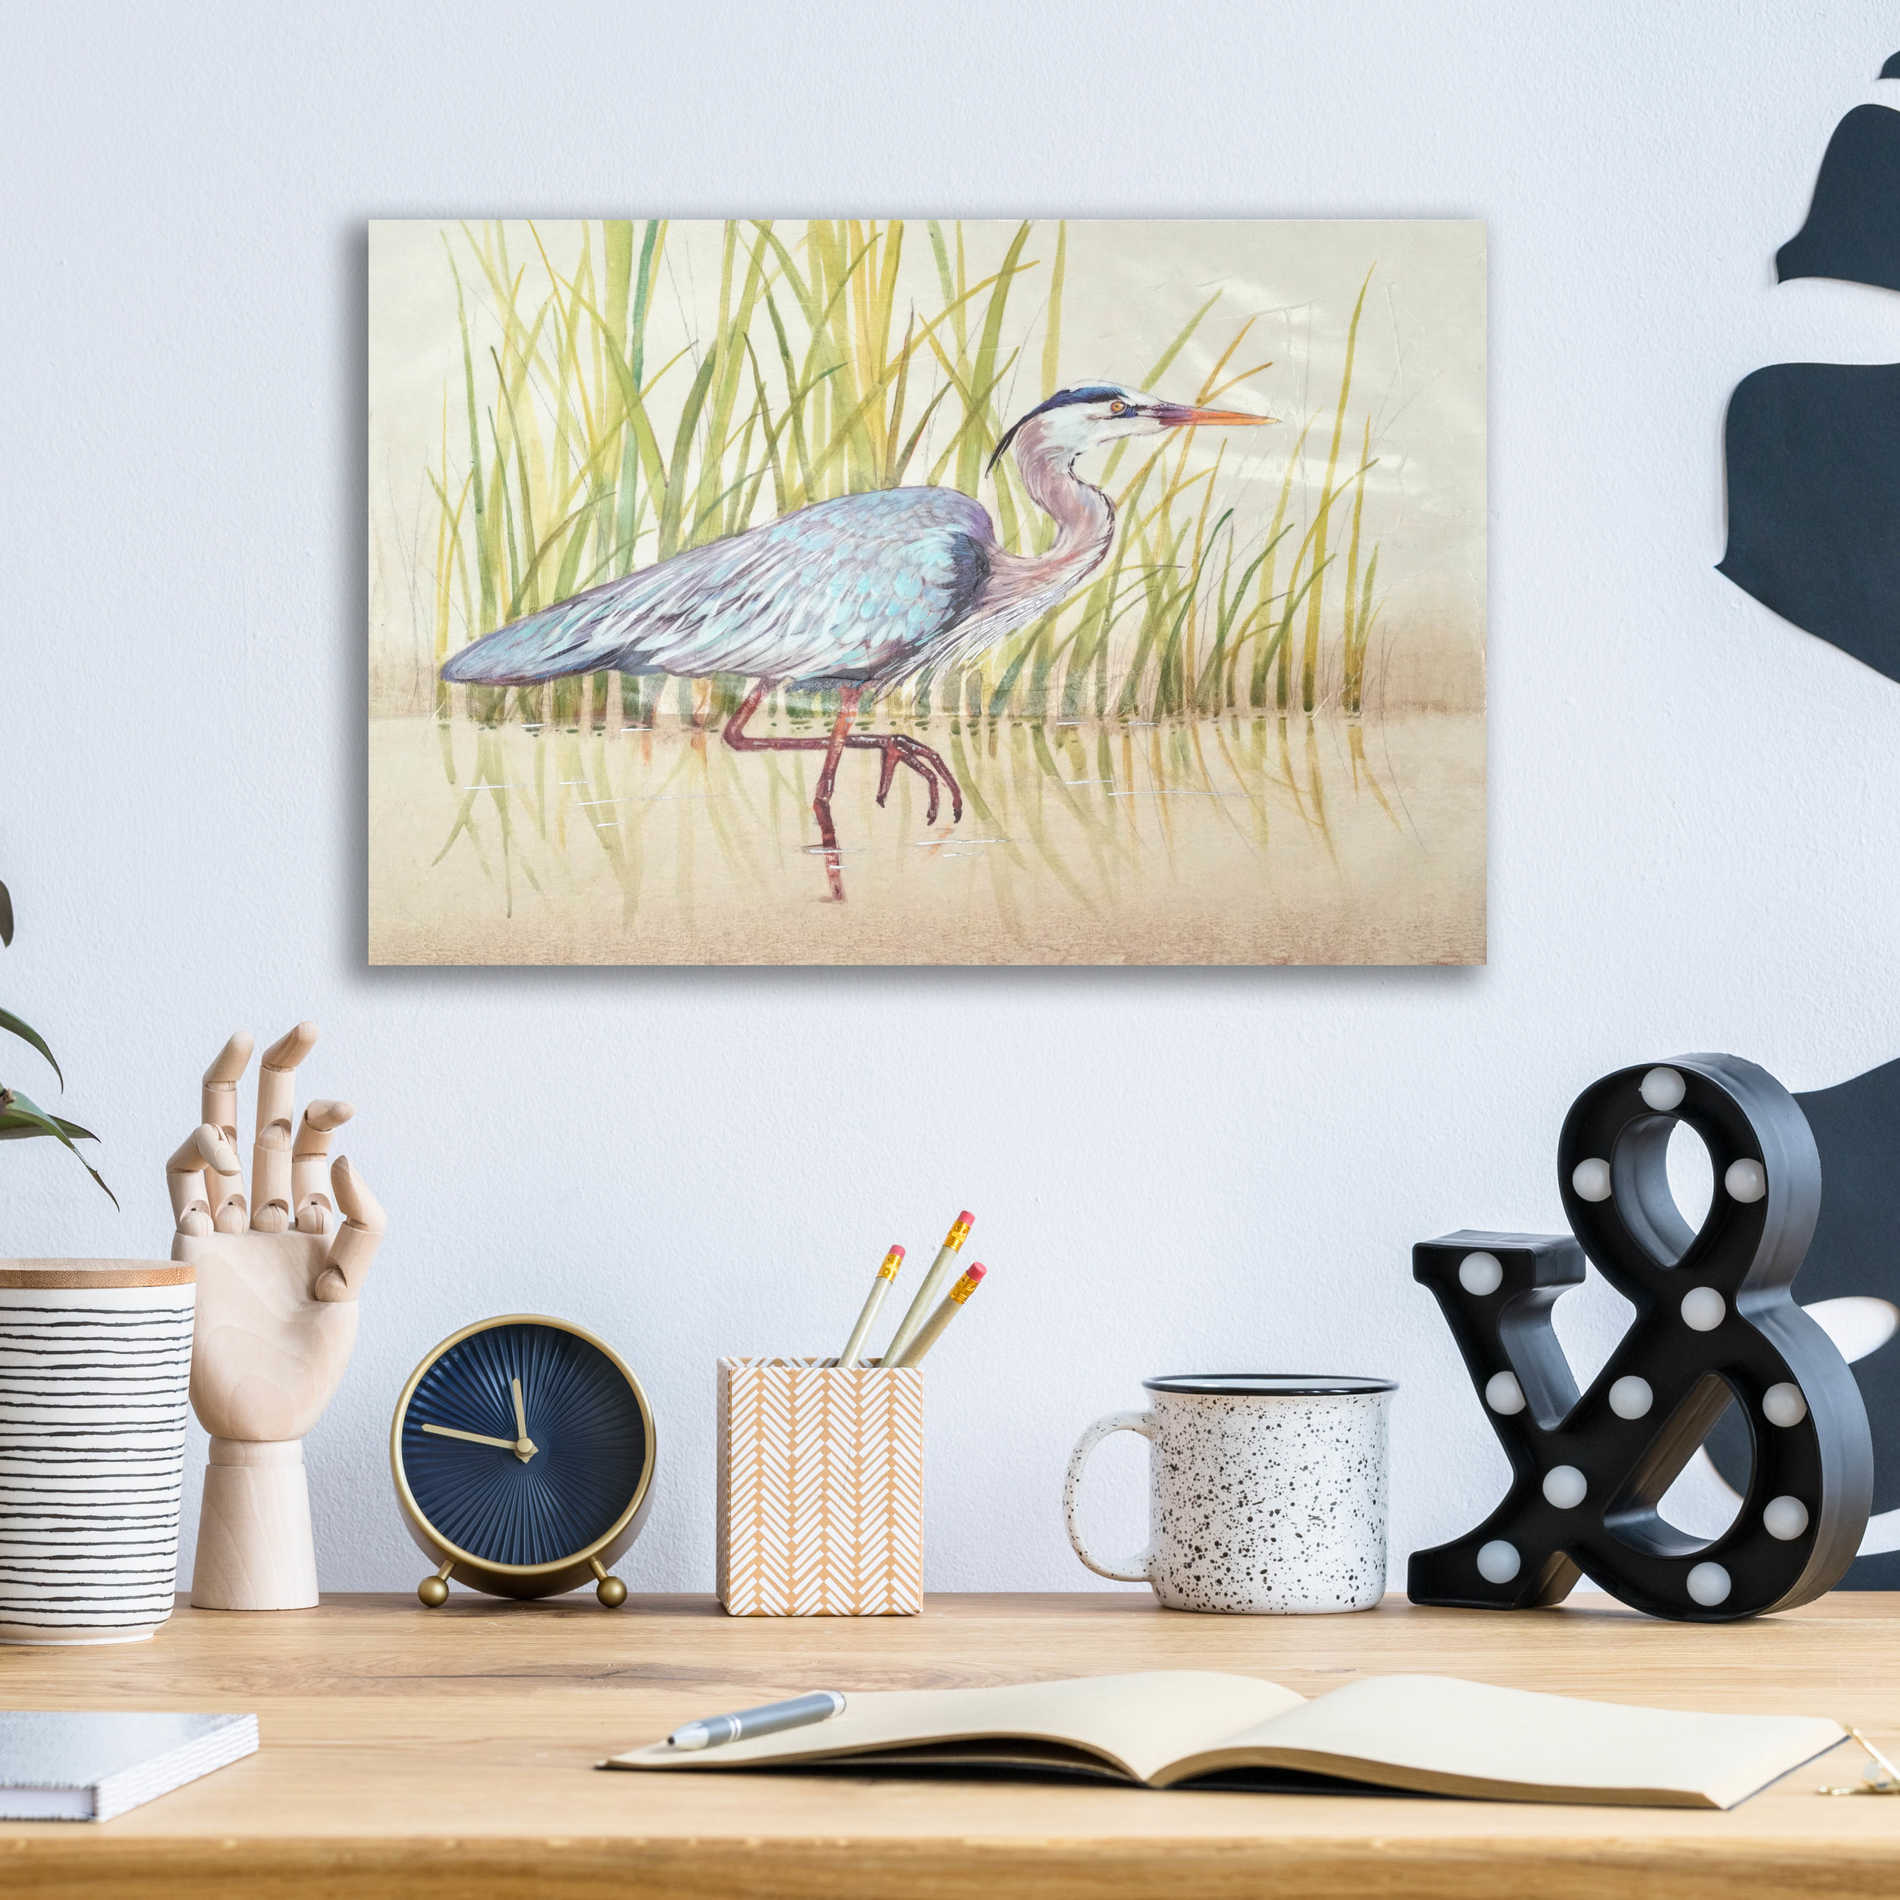 Epic Art 'Heron & Reeds I' by Tim O'Toole, Acrylic Glass Wall Art,16x12